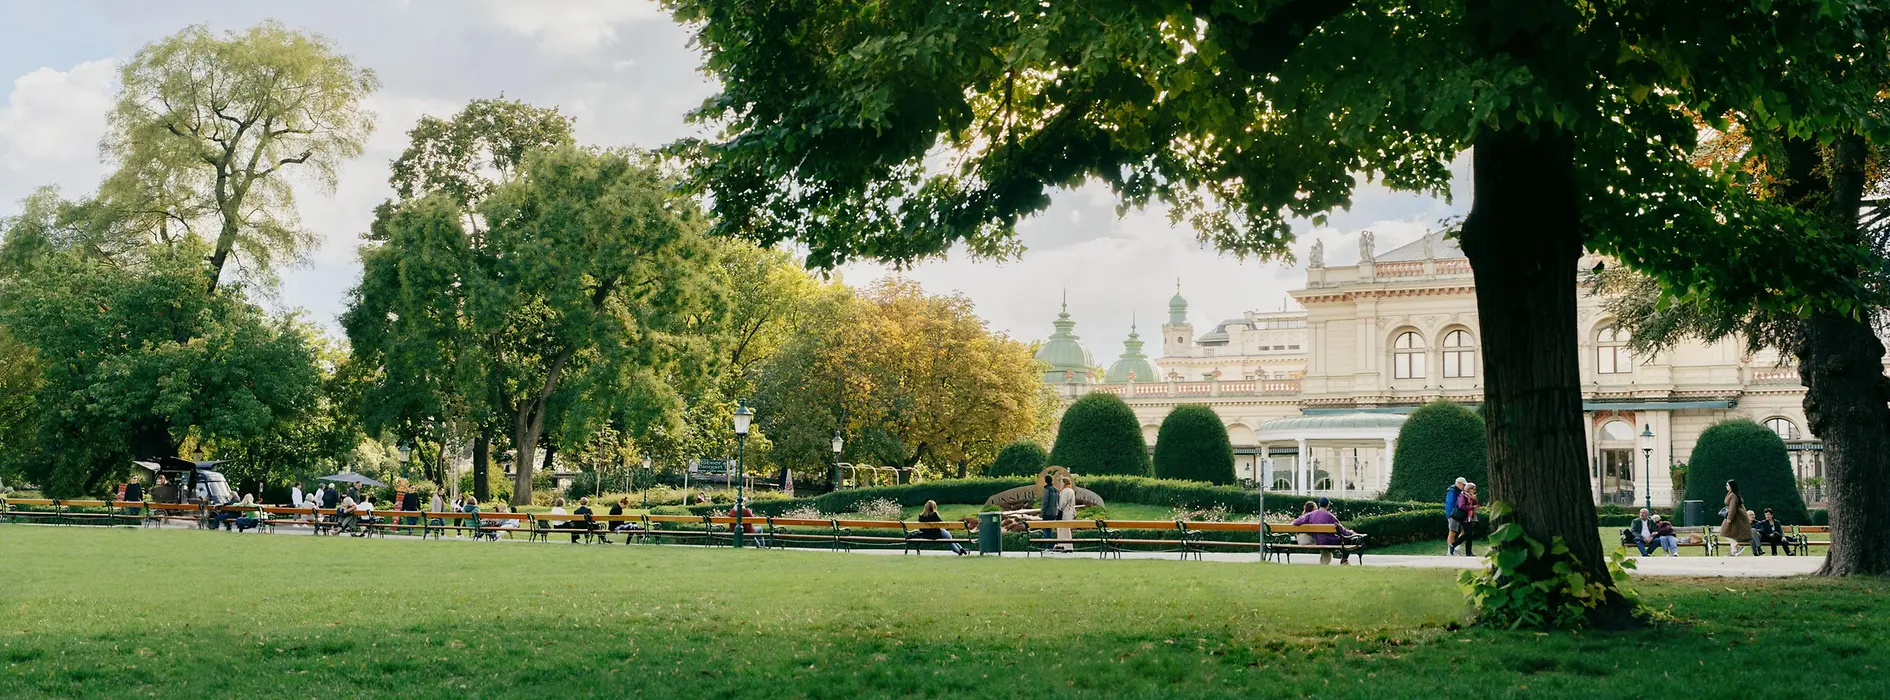 Městský park ve Vídni